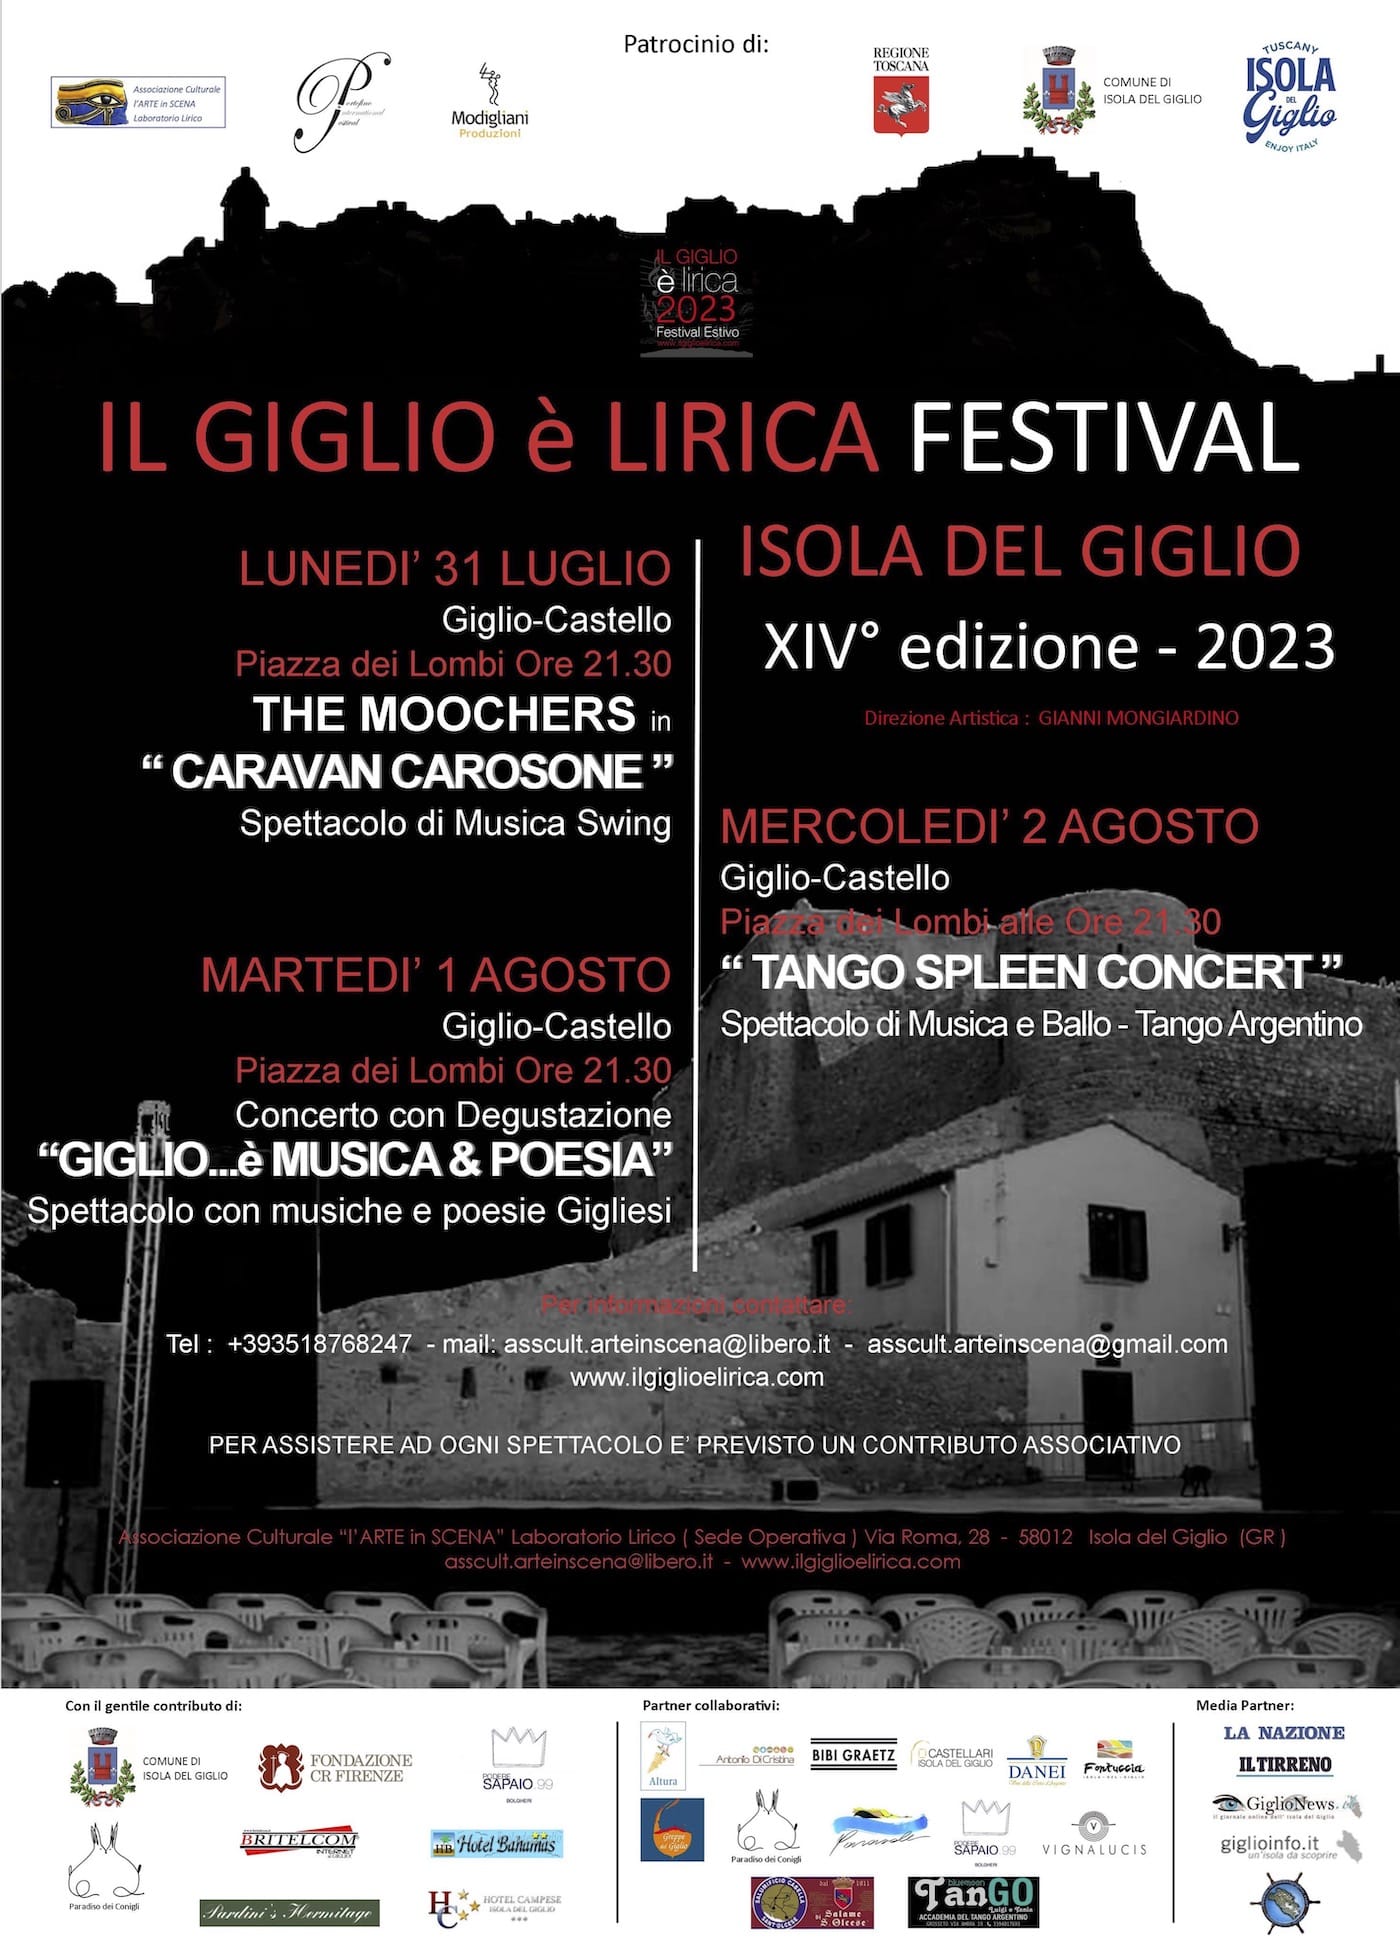 Locandina della XIV° Edizione 2023 "Il Giglio è Lirica Festival" con Eventi Musciale all'Isola del Giglio